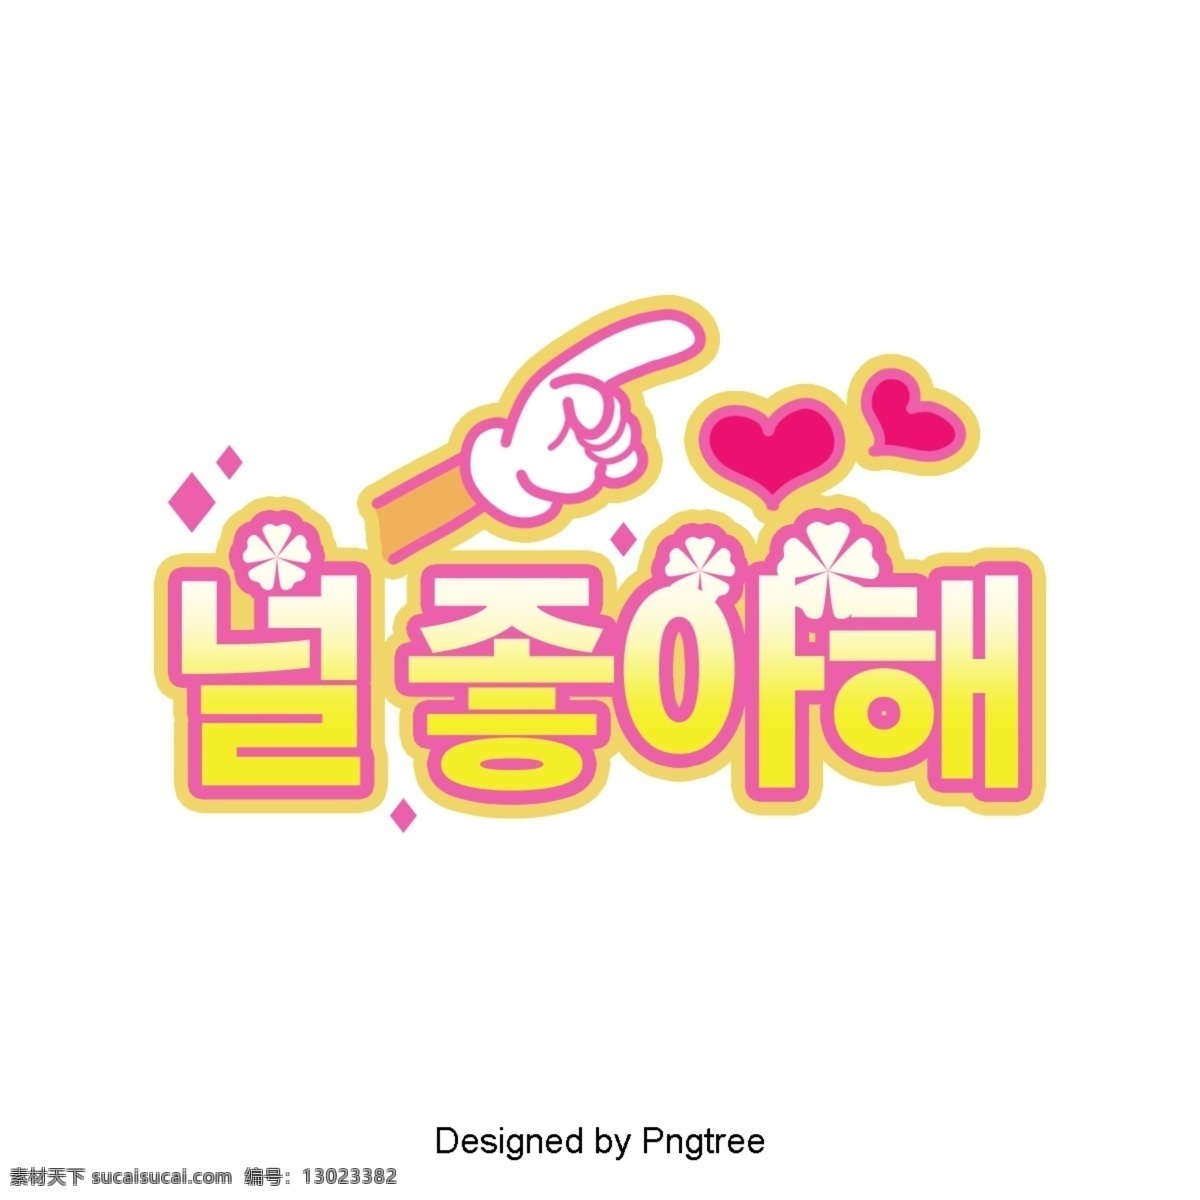 我喜欢 韩国 卡通 场景 字体 淡黄色 心脏形 用手指指 photoshop 喜欢 水竹 我爱你